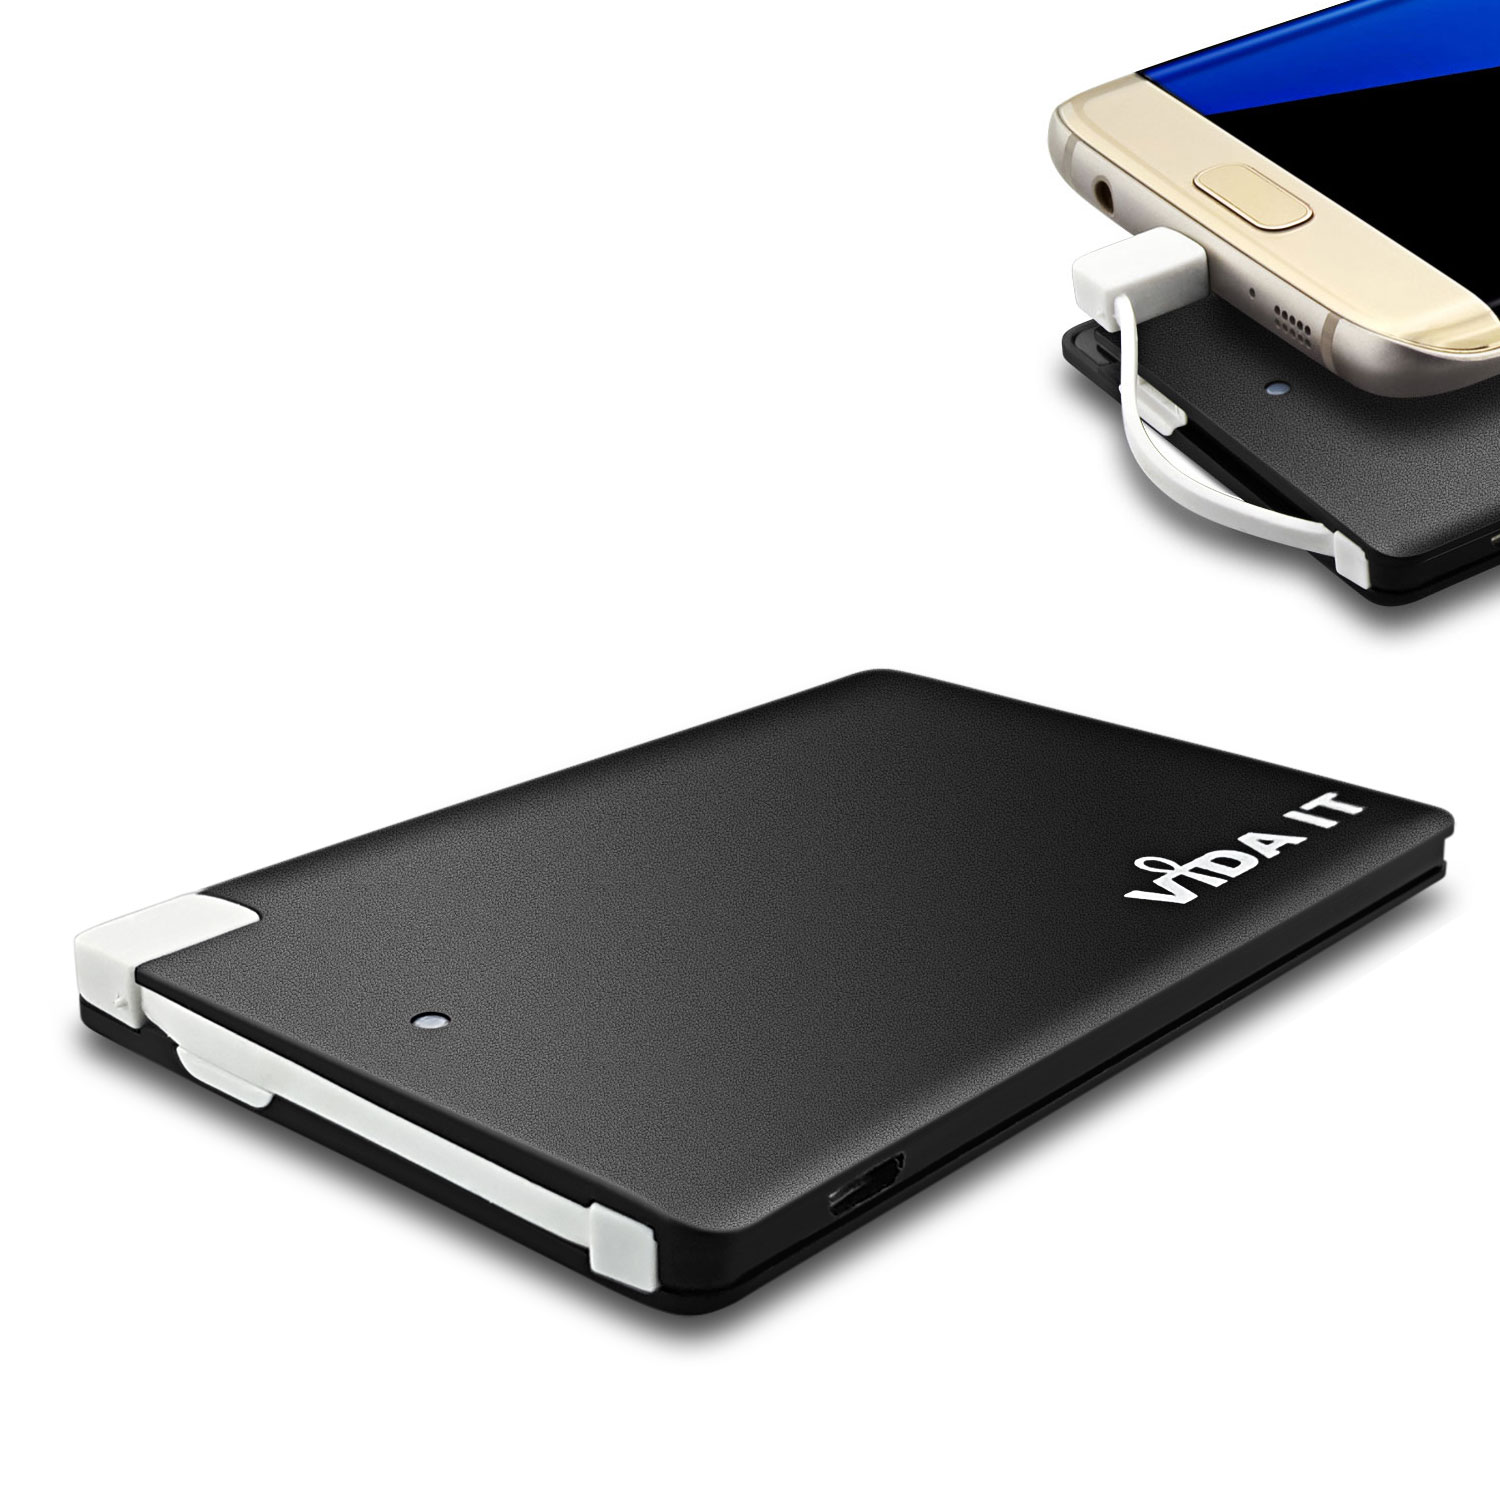 Tragbare Akku Extern PowerBank 2500mAh Ladegerät mit einem integrierten Micro-USB-Kabel & iPhone- und USB Typ-C Adaptern